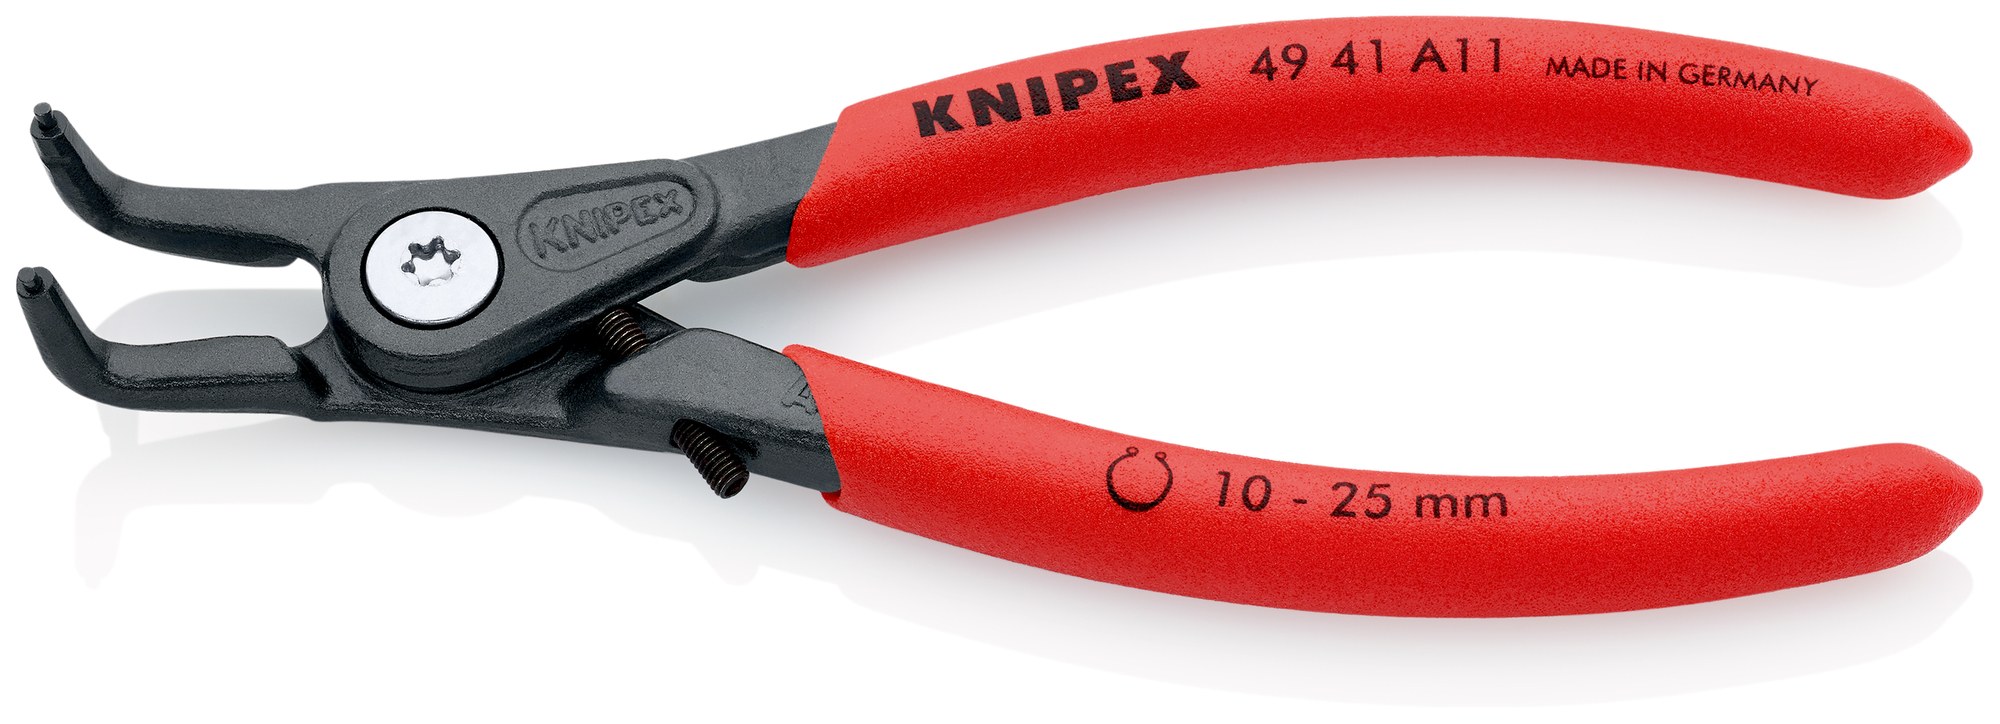 KNIPEX Kliešte na poistné krúžky, precízne 4941A11